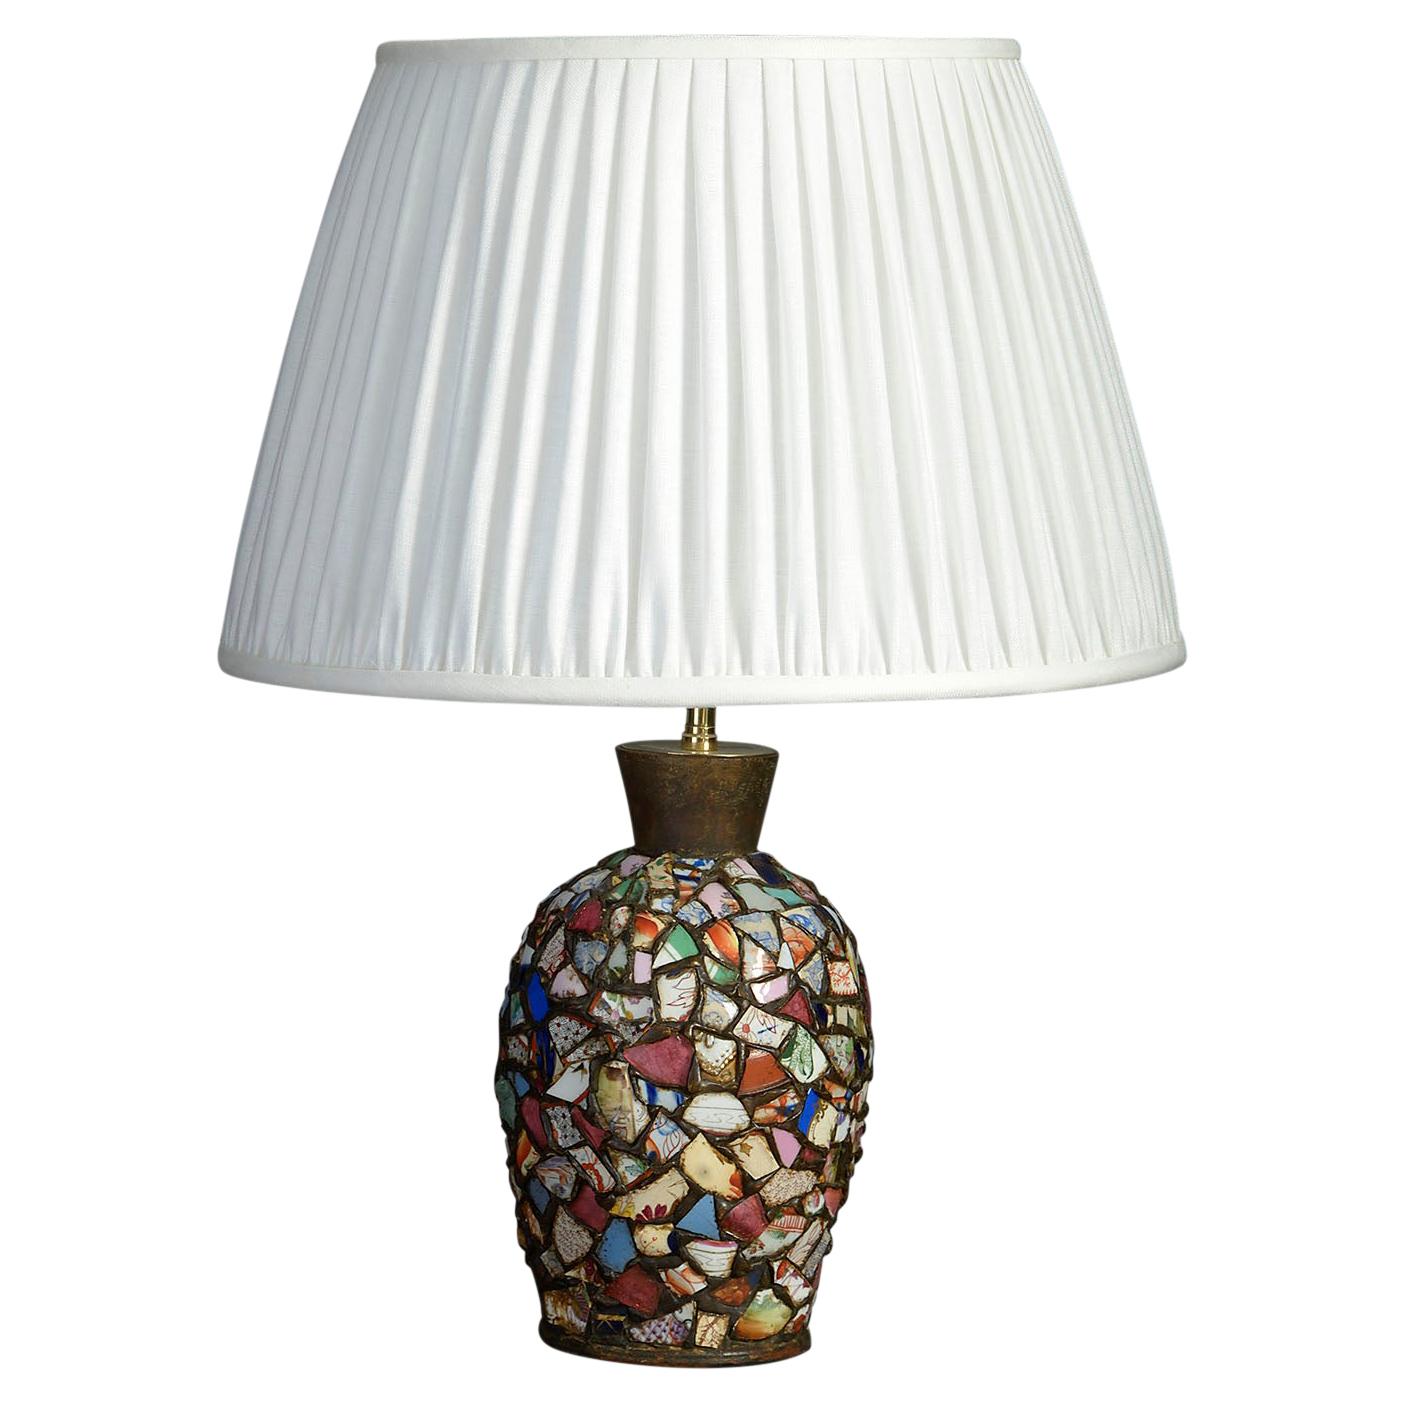 Unusual Ceramic Collage Lamp